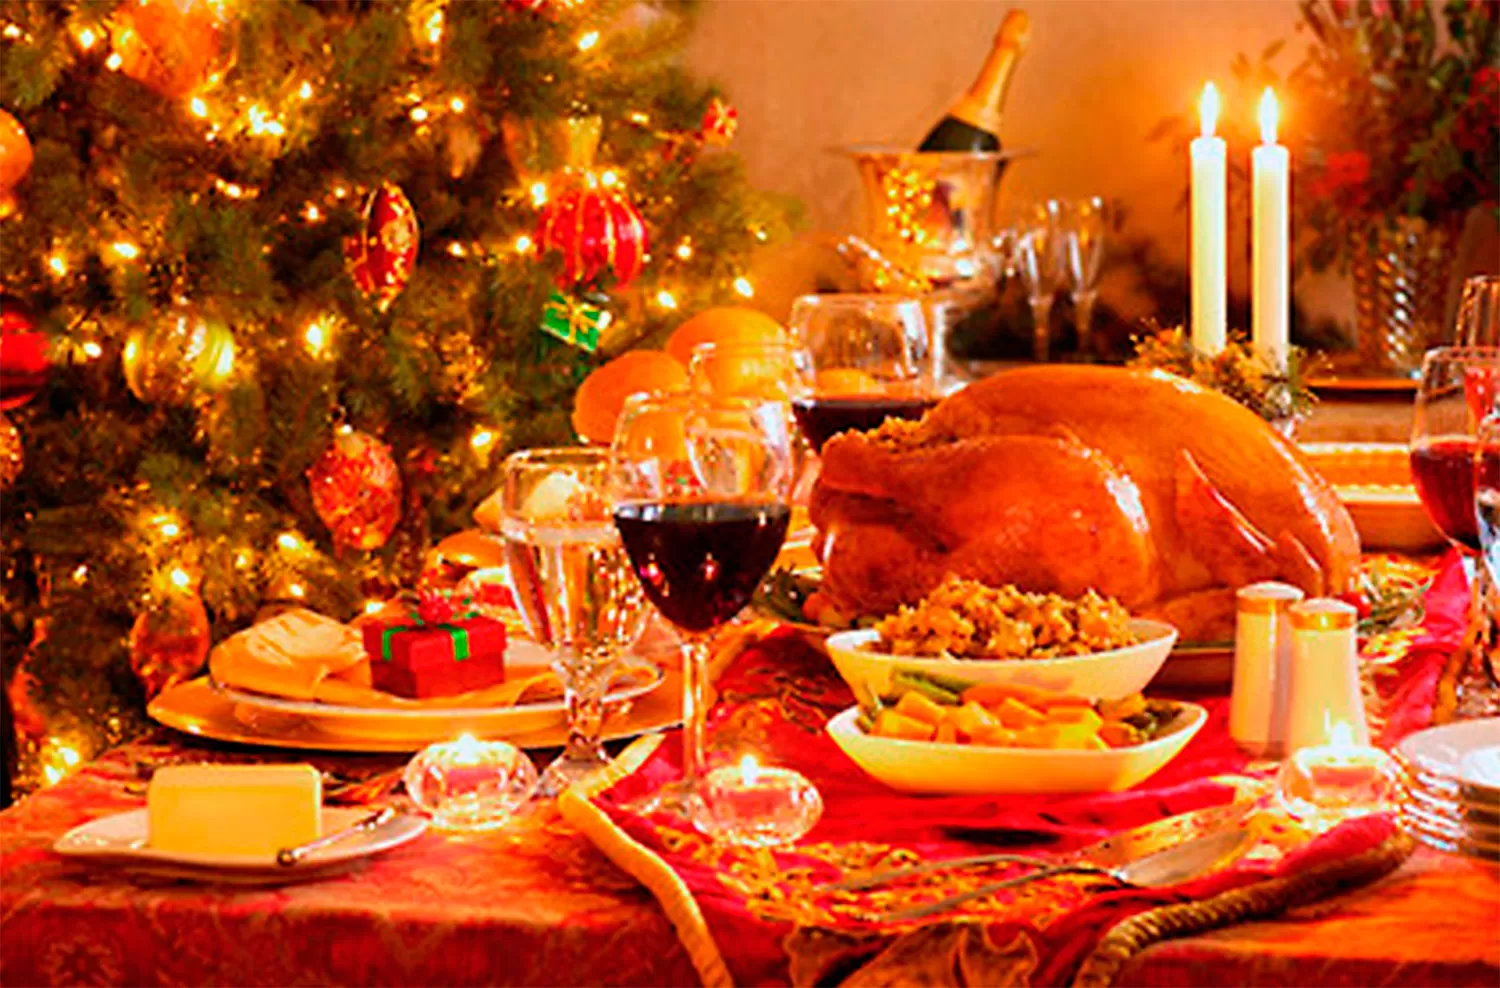 La cena típica navideña cuesta casi el doble que el año pasado